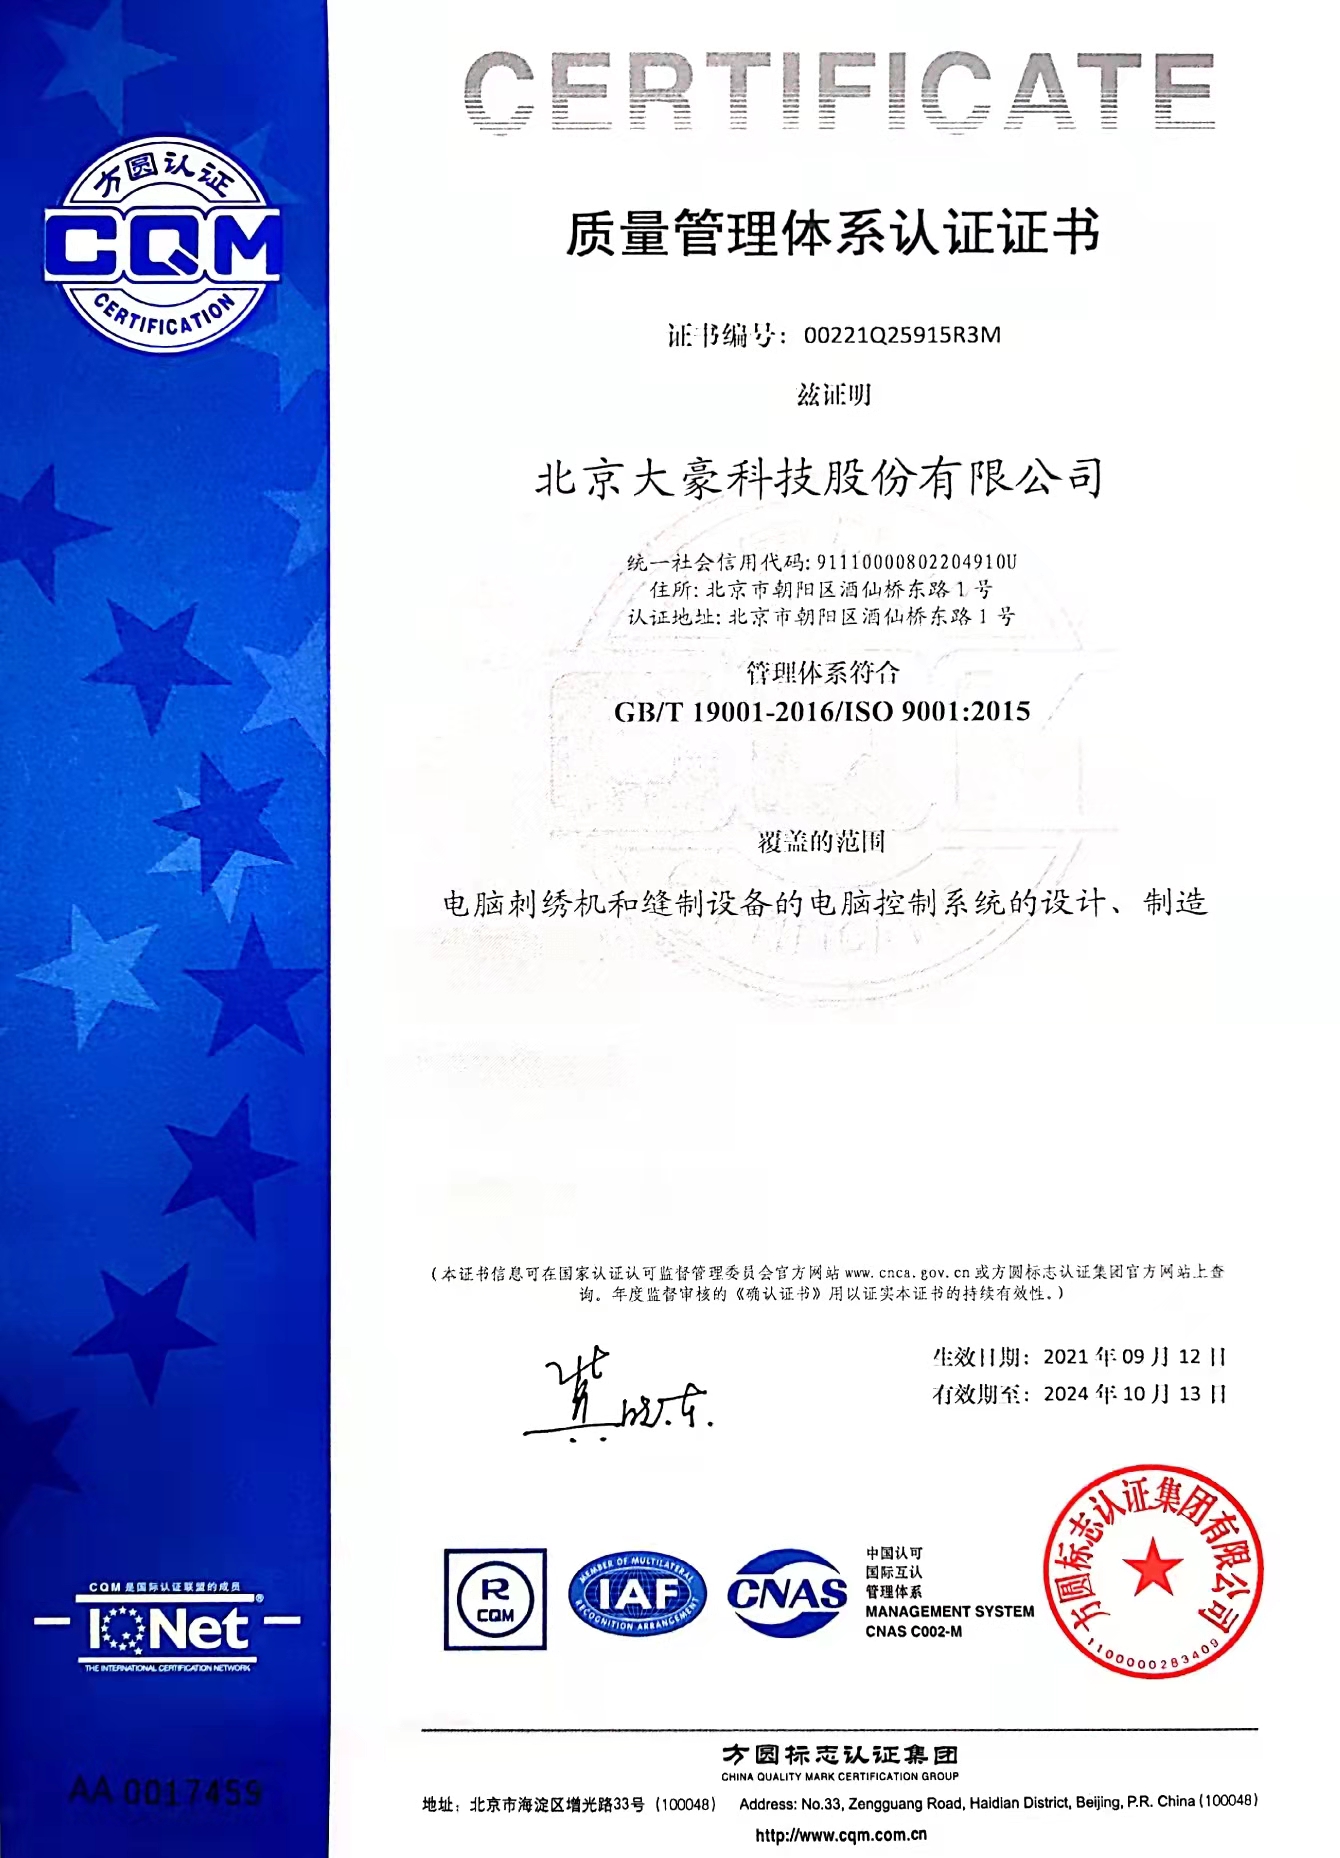 大豪科技质量管理体系证书-中文版